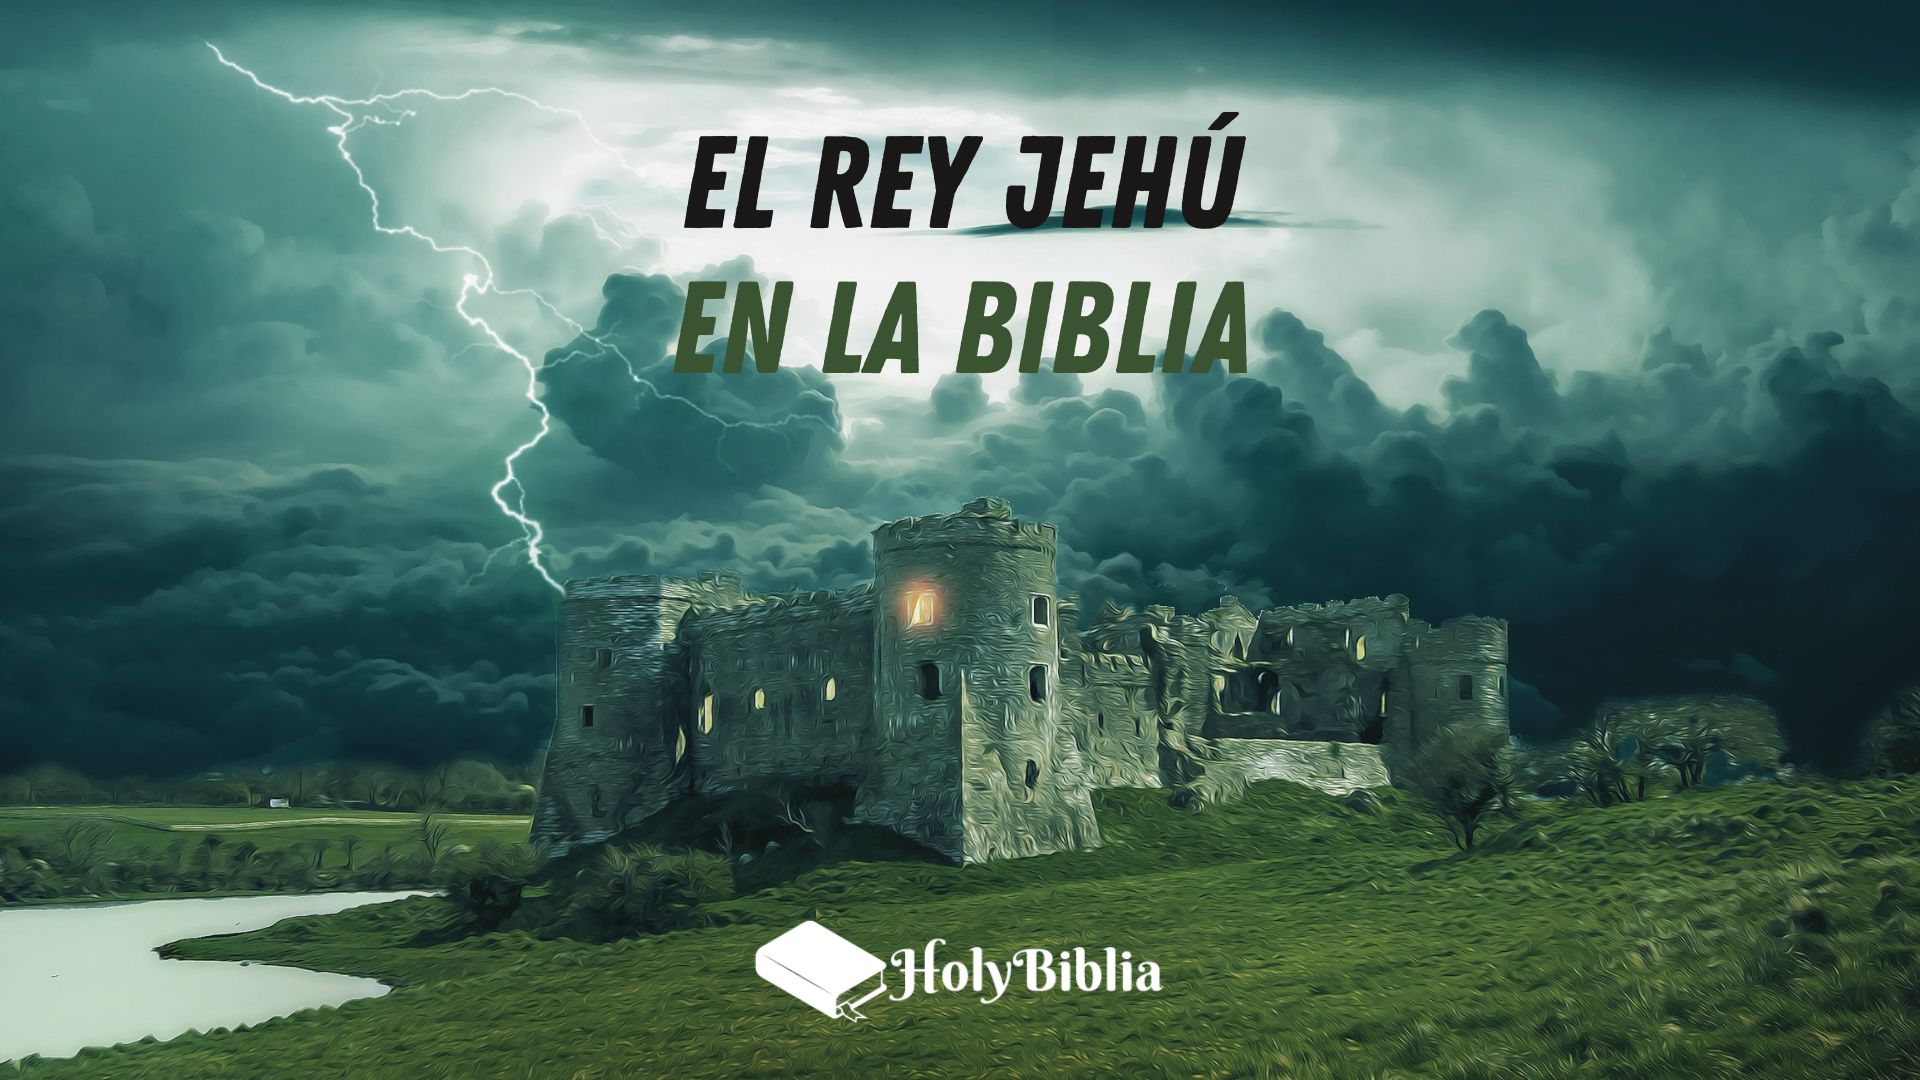 Quién fue el rey Jehú en la Biblia